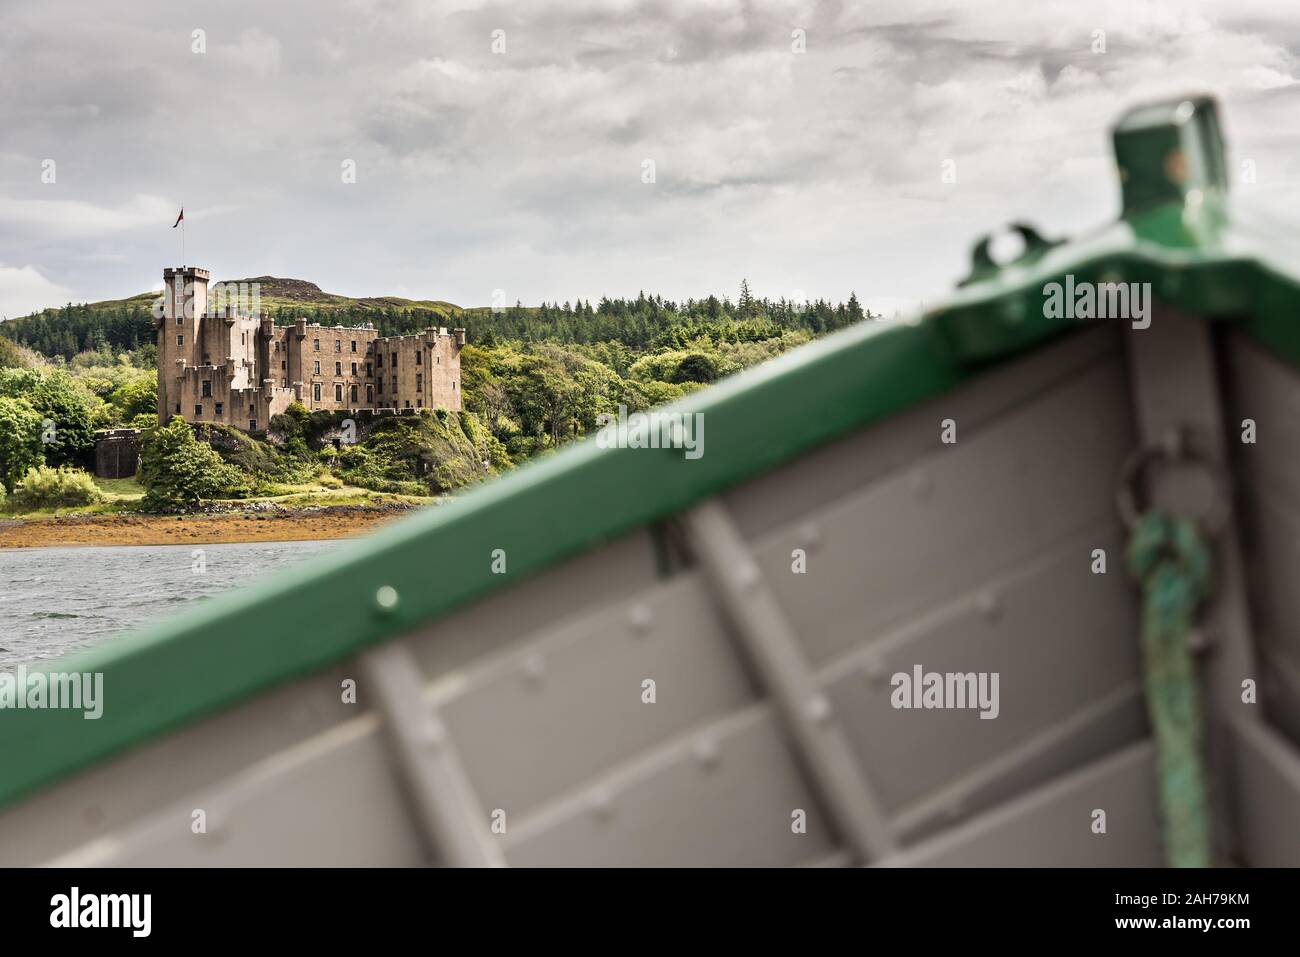 En primer plano la proa verde y gris de un barco de madera, en la distancia la costa de una isla escocesa con un antiguo castillo Foto de stock